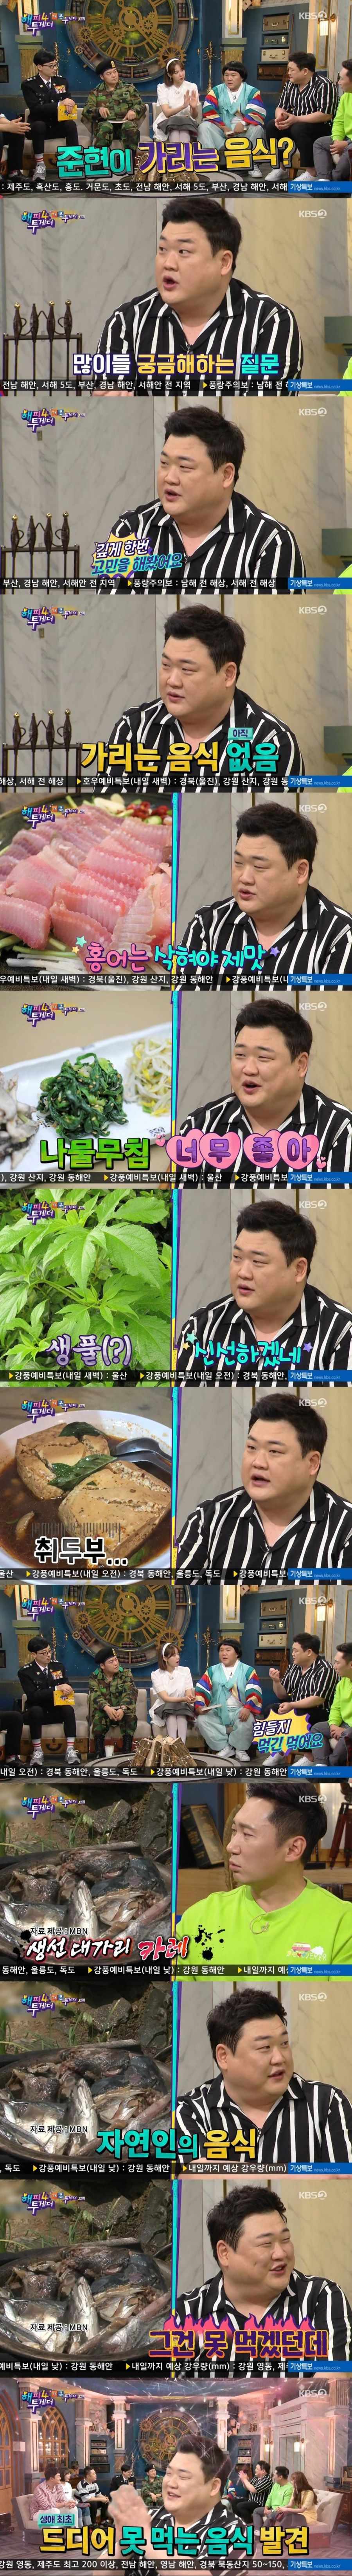 14 김준현도 못먹는 음식.jpg